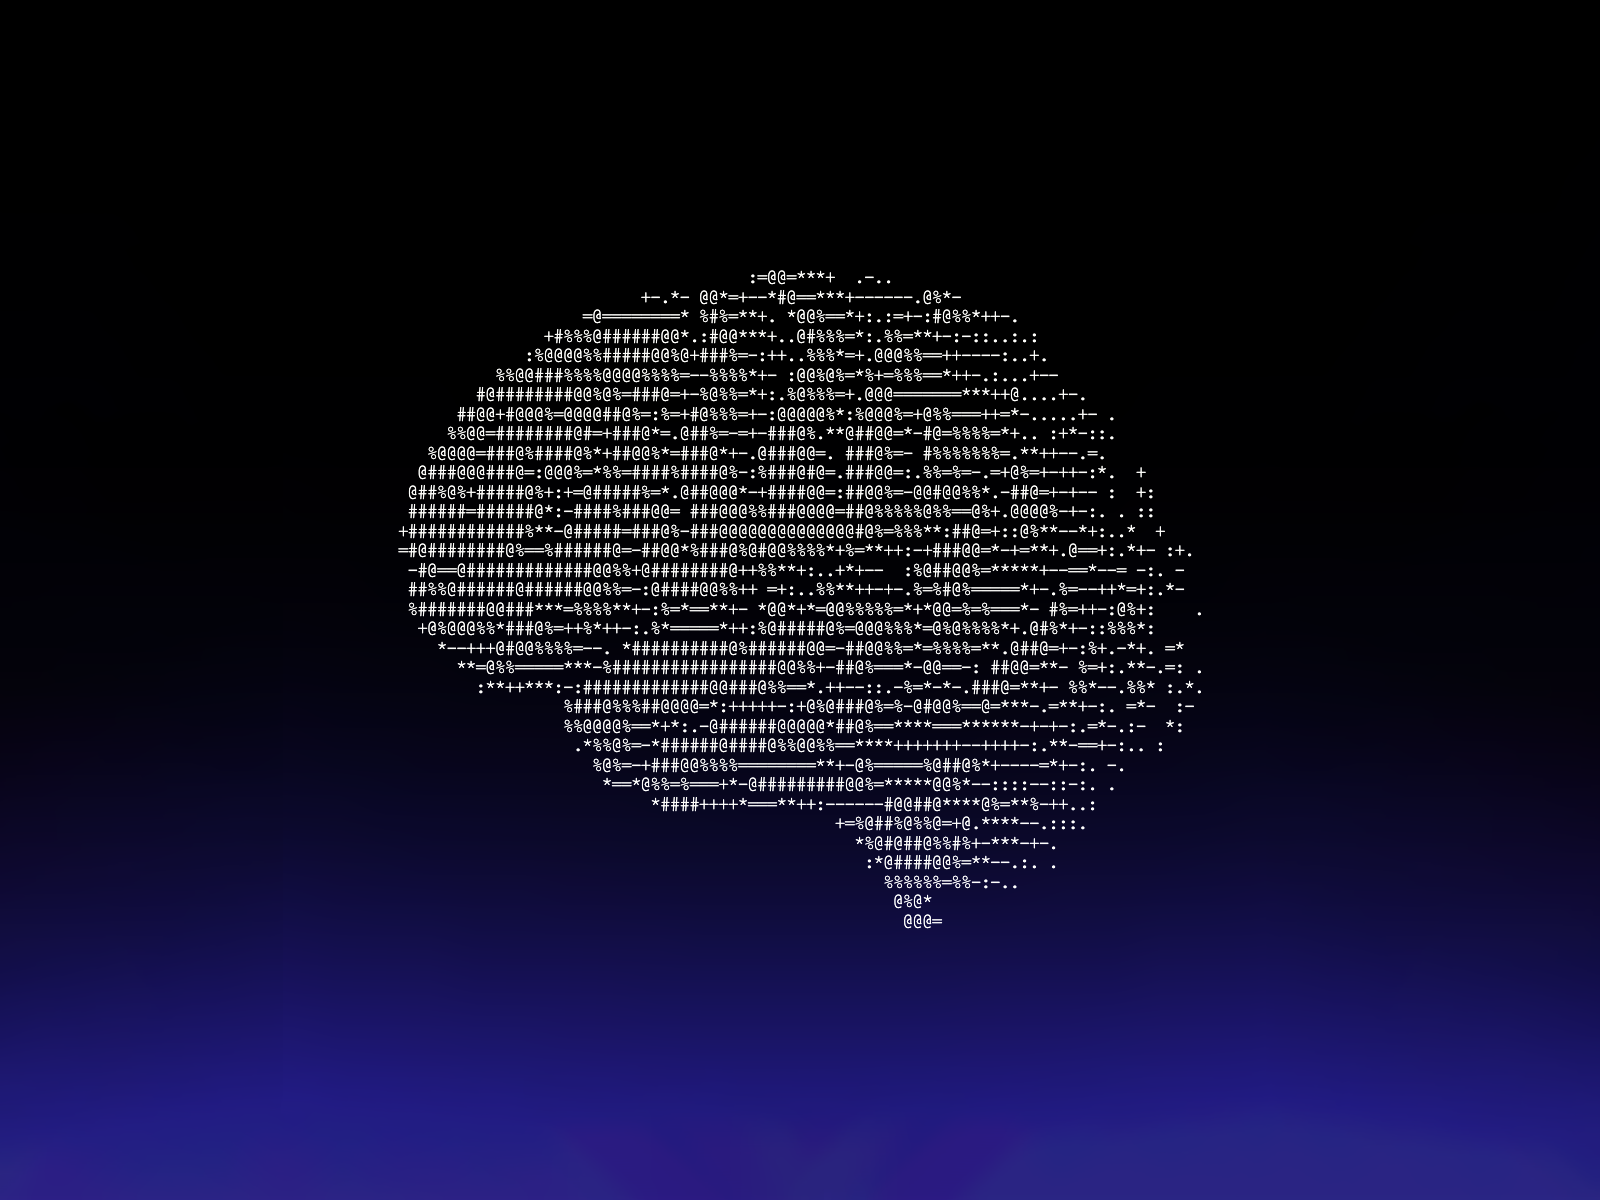 ASCII Brain